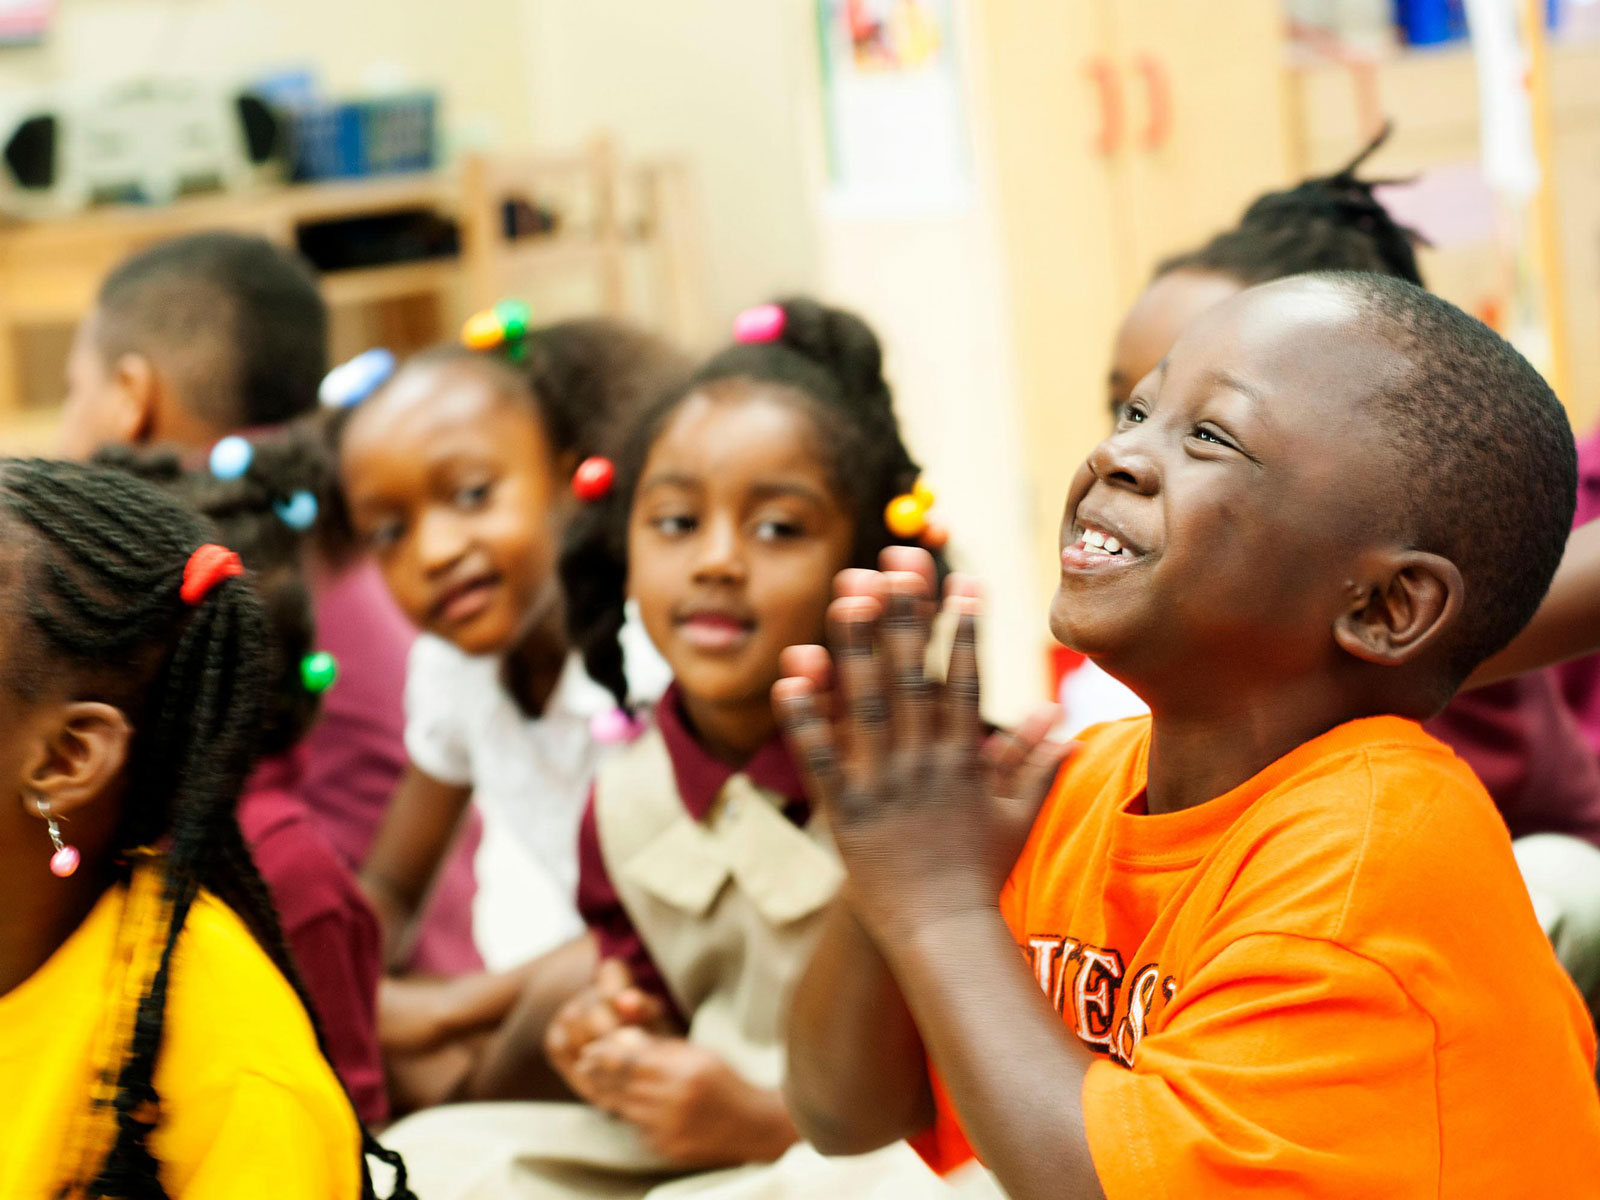 Niños afroamericanos riendo y sonriendo.